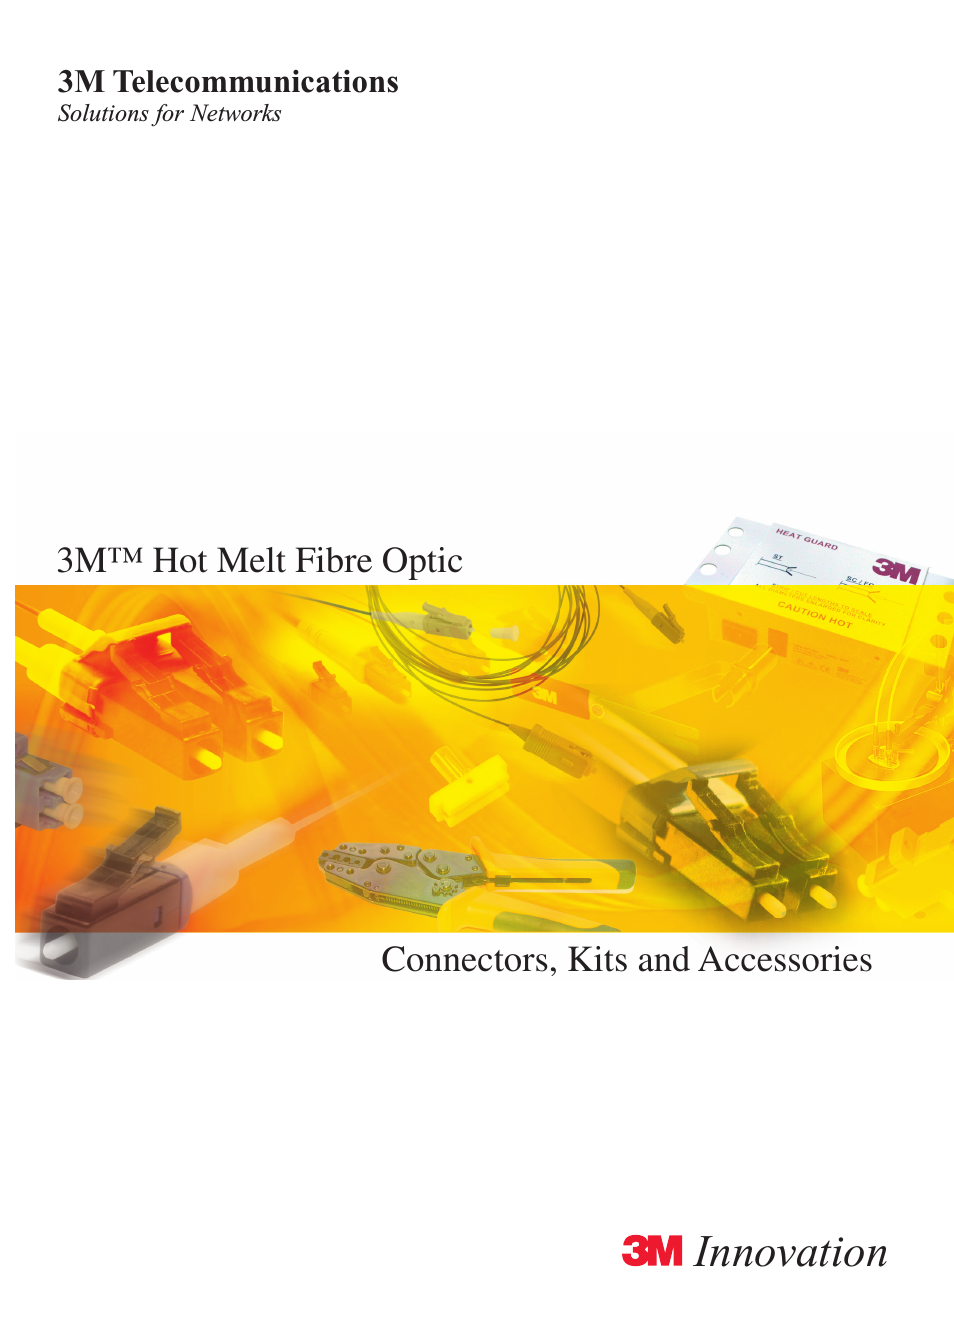 Hot Melt Fibre Optic